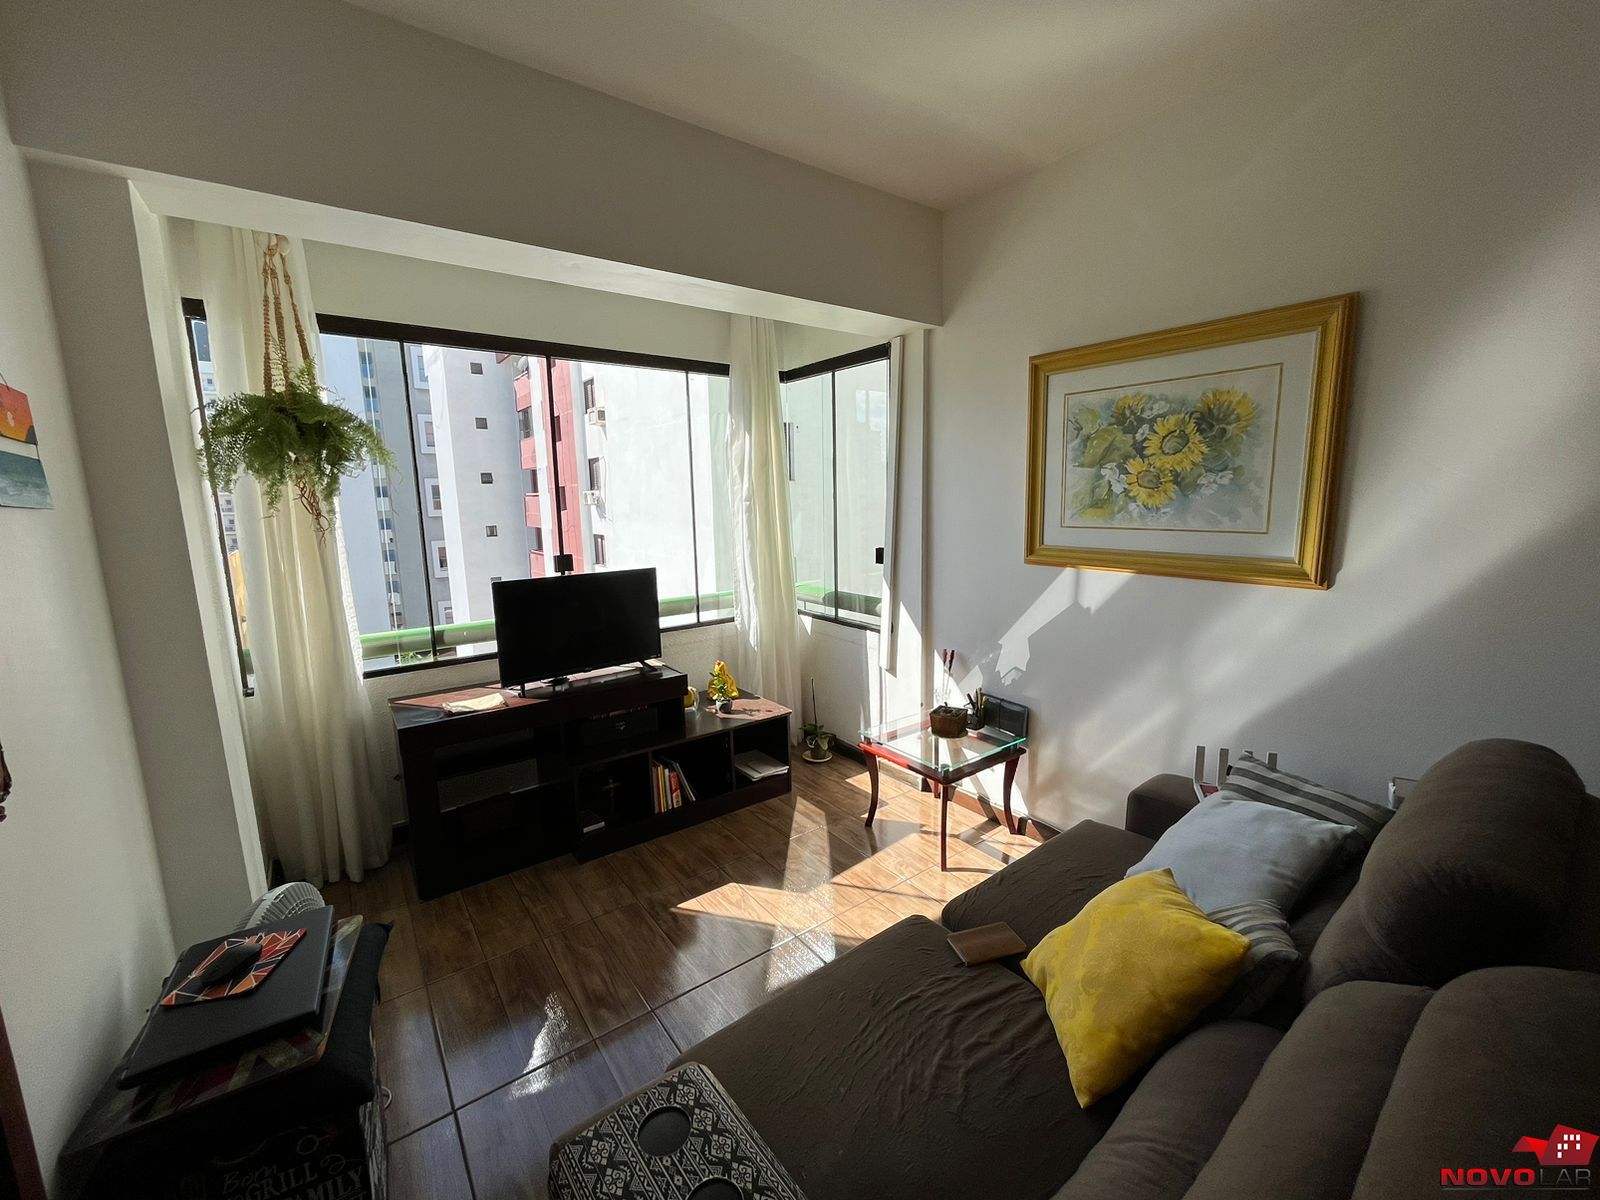 Apartamento com 1 dormitório em Torres, no bairro Centro à venda